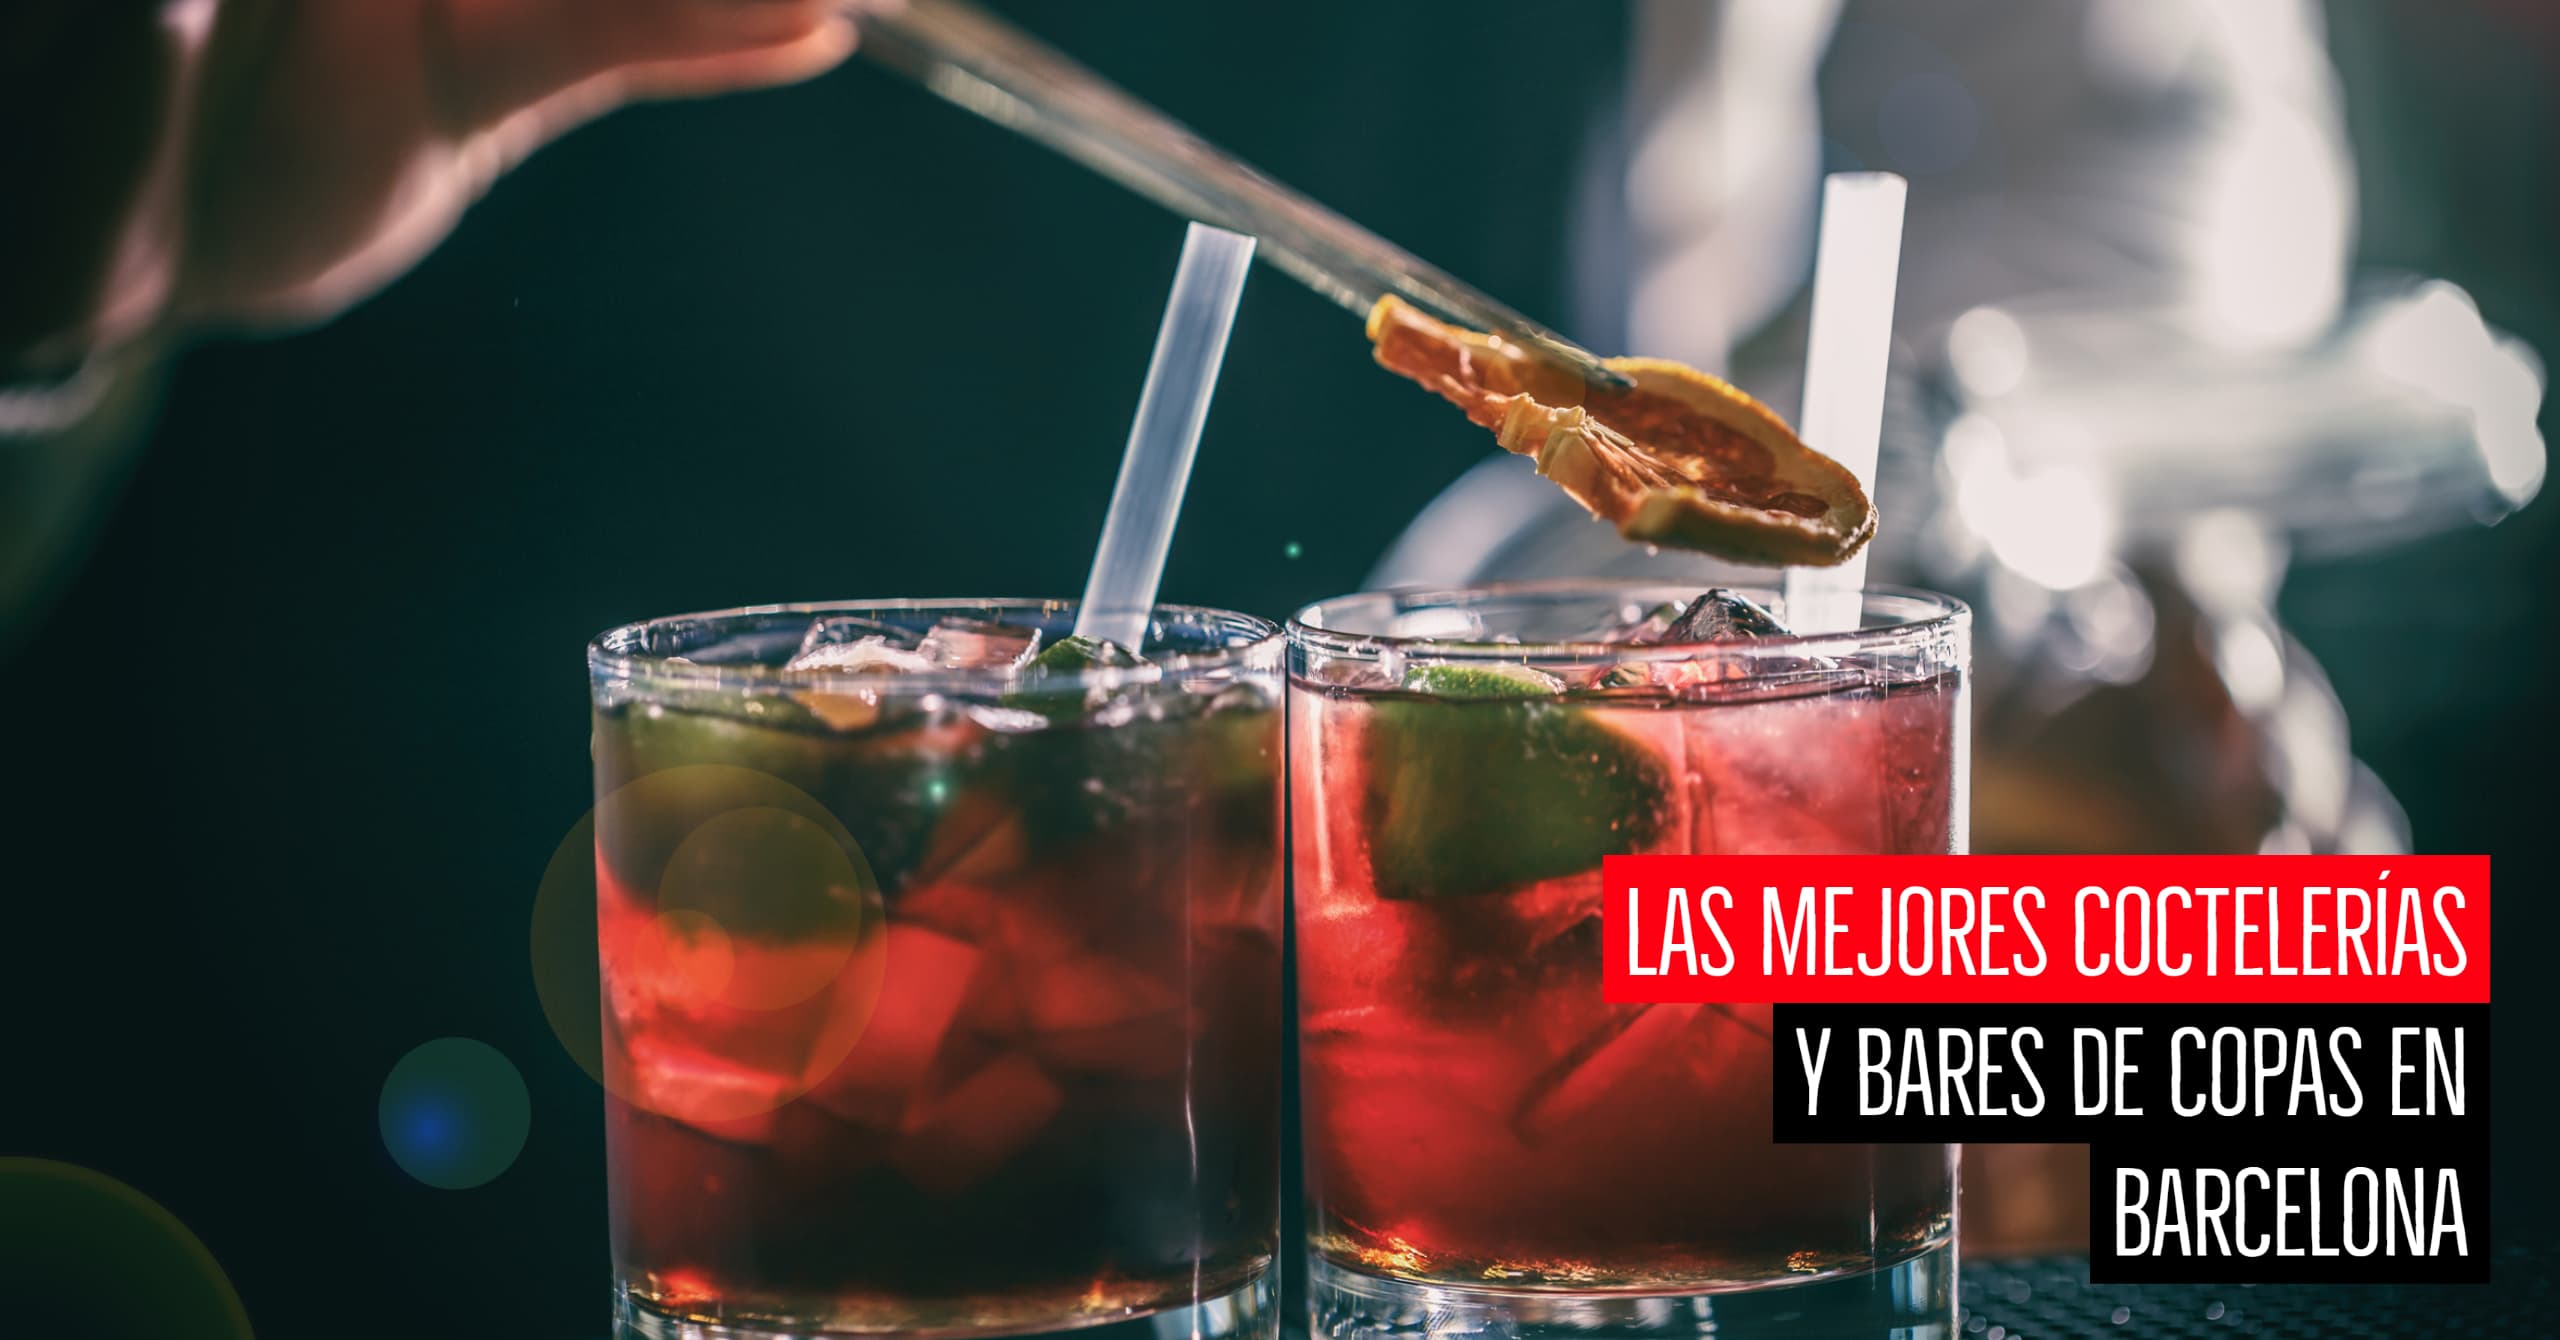 Las mejores coctelerías y bares de copas en Barcelona